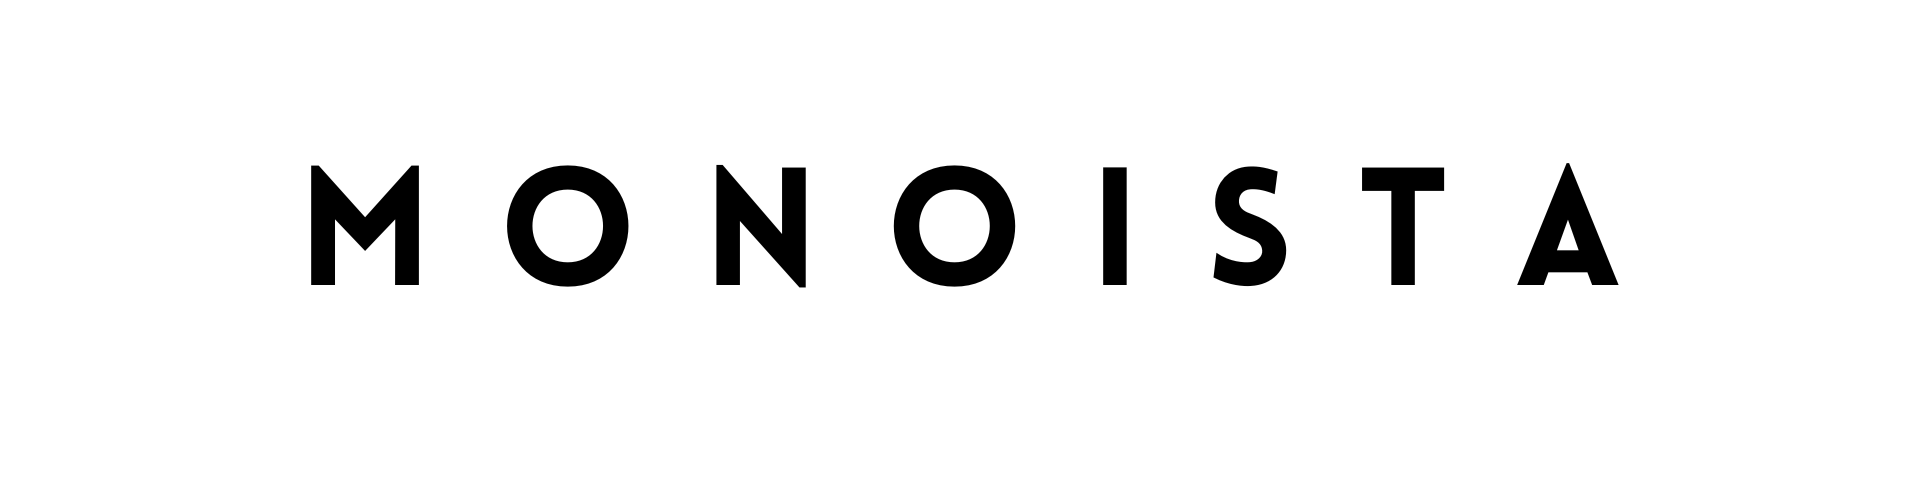 MONOISTA logo - Schweißnähte abschleifen mit dem Winkelschleifer